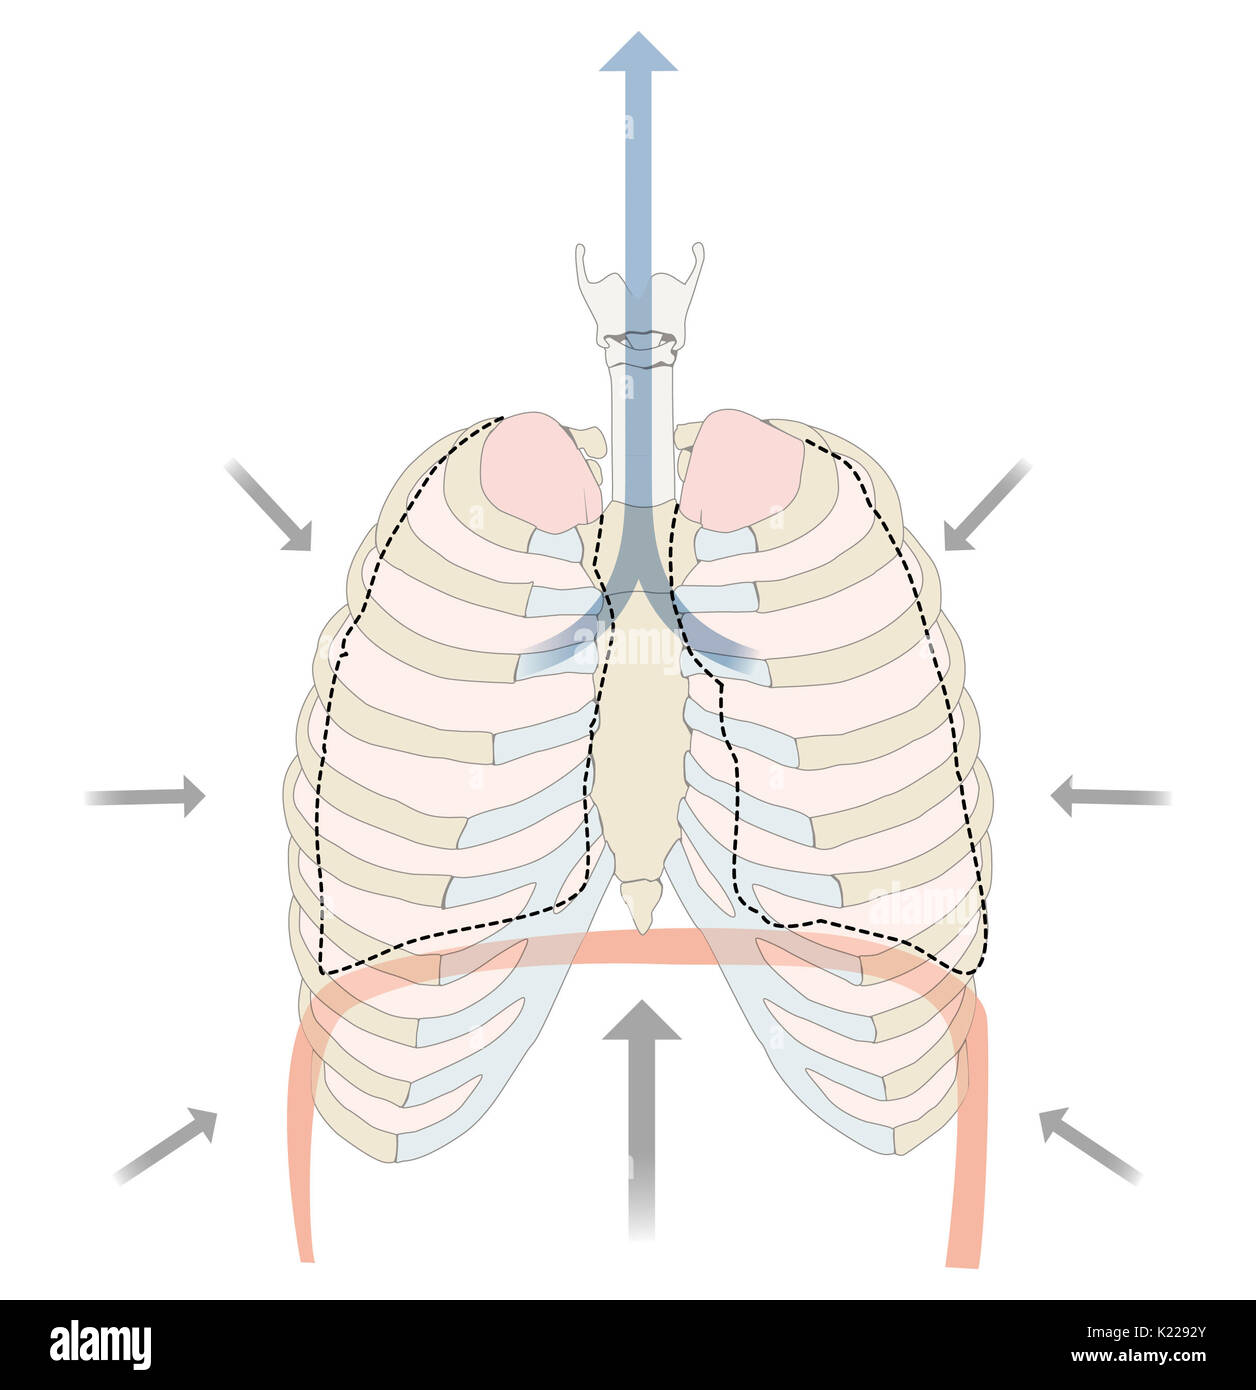 L'expiration expulse l'air des poumons. Il est causé par un relâchement des muscles respiratoires. Les poumons retour à leur volume au repos, ce qui provoque l'expulsion de l'air. Banque D'Images